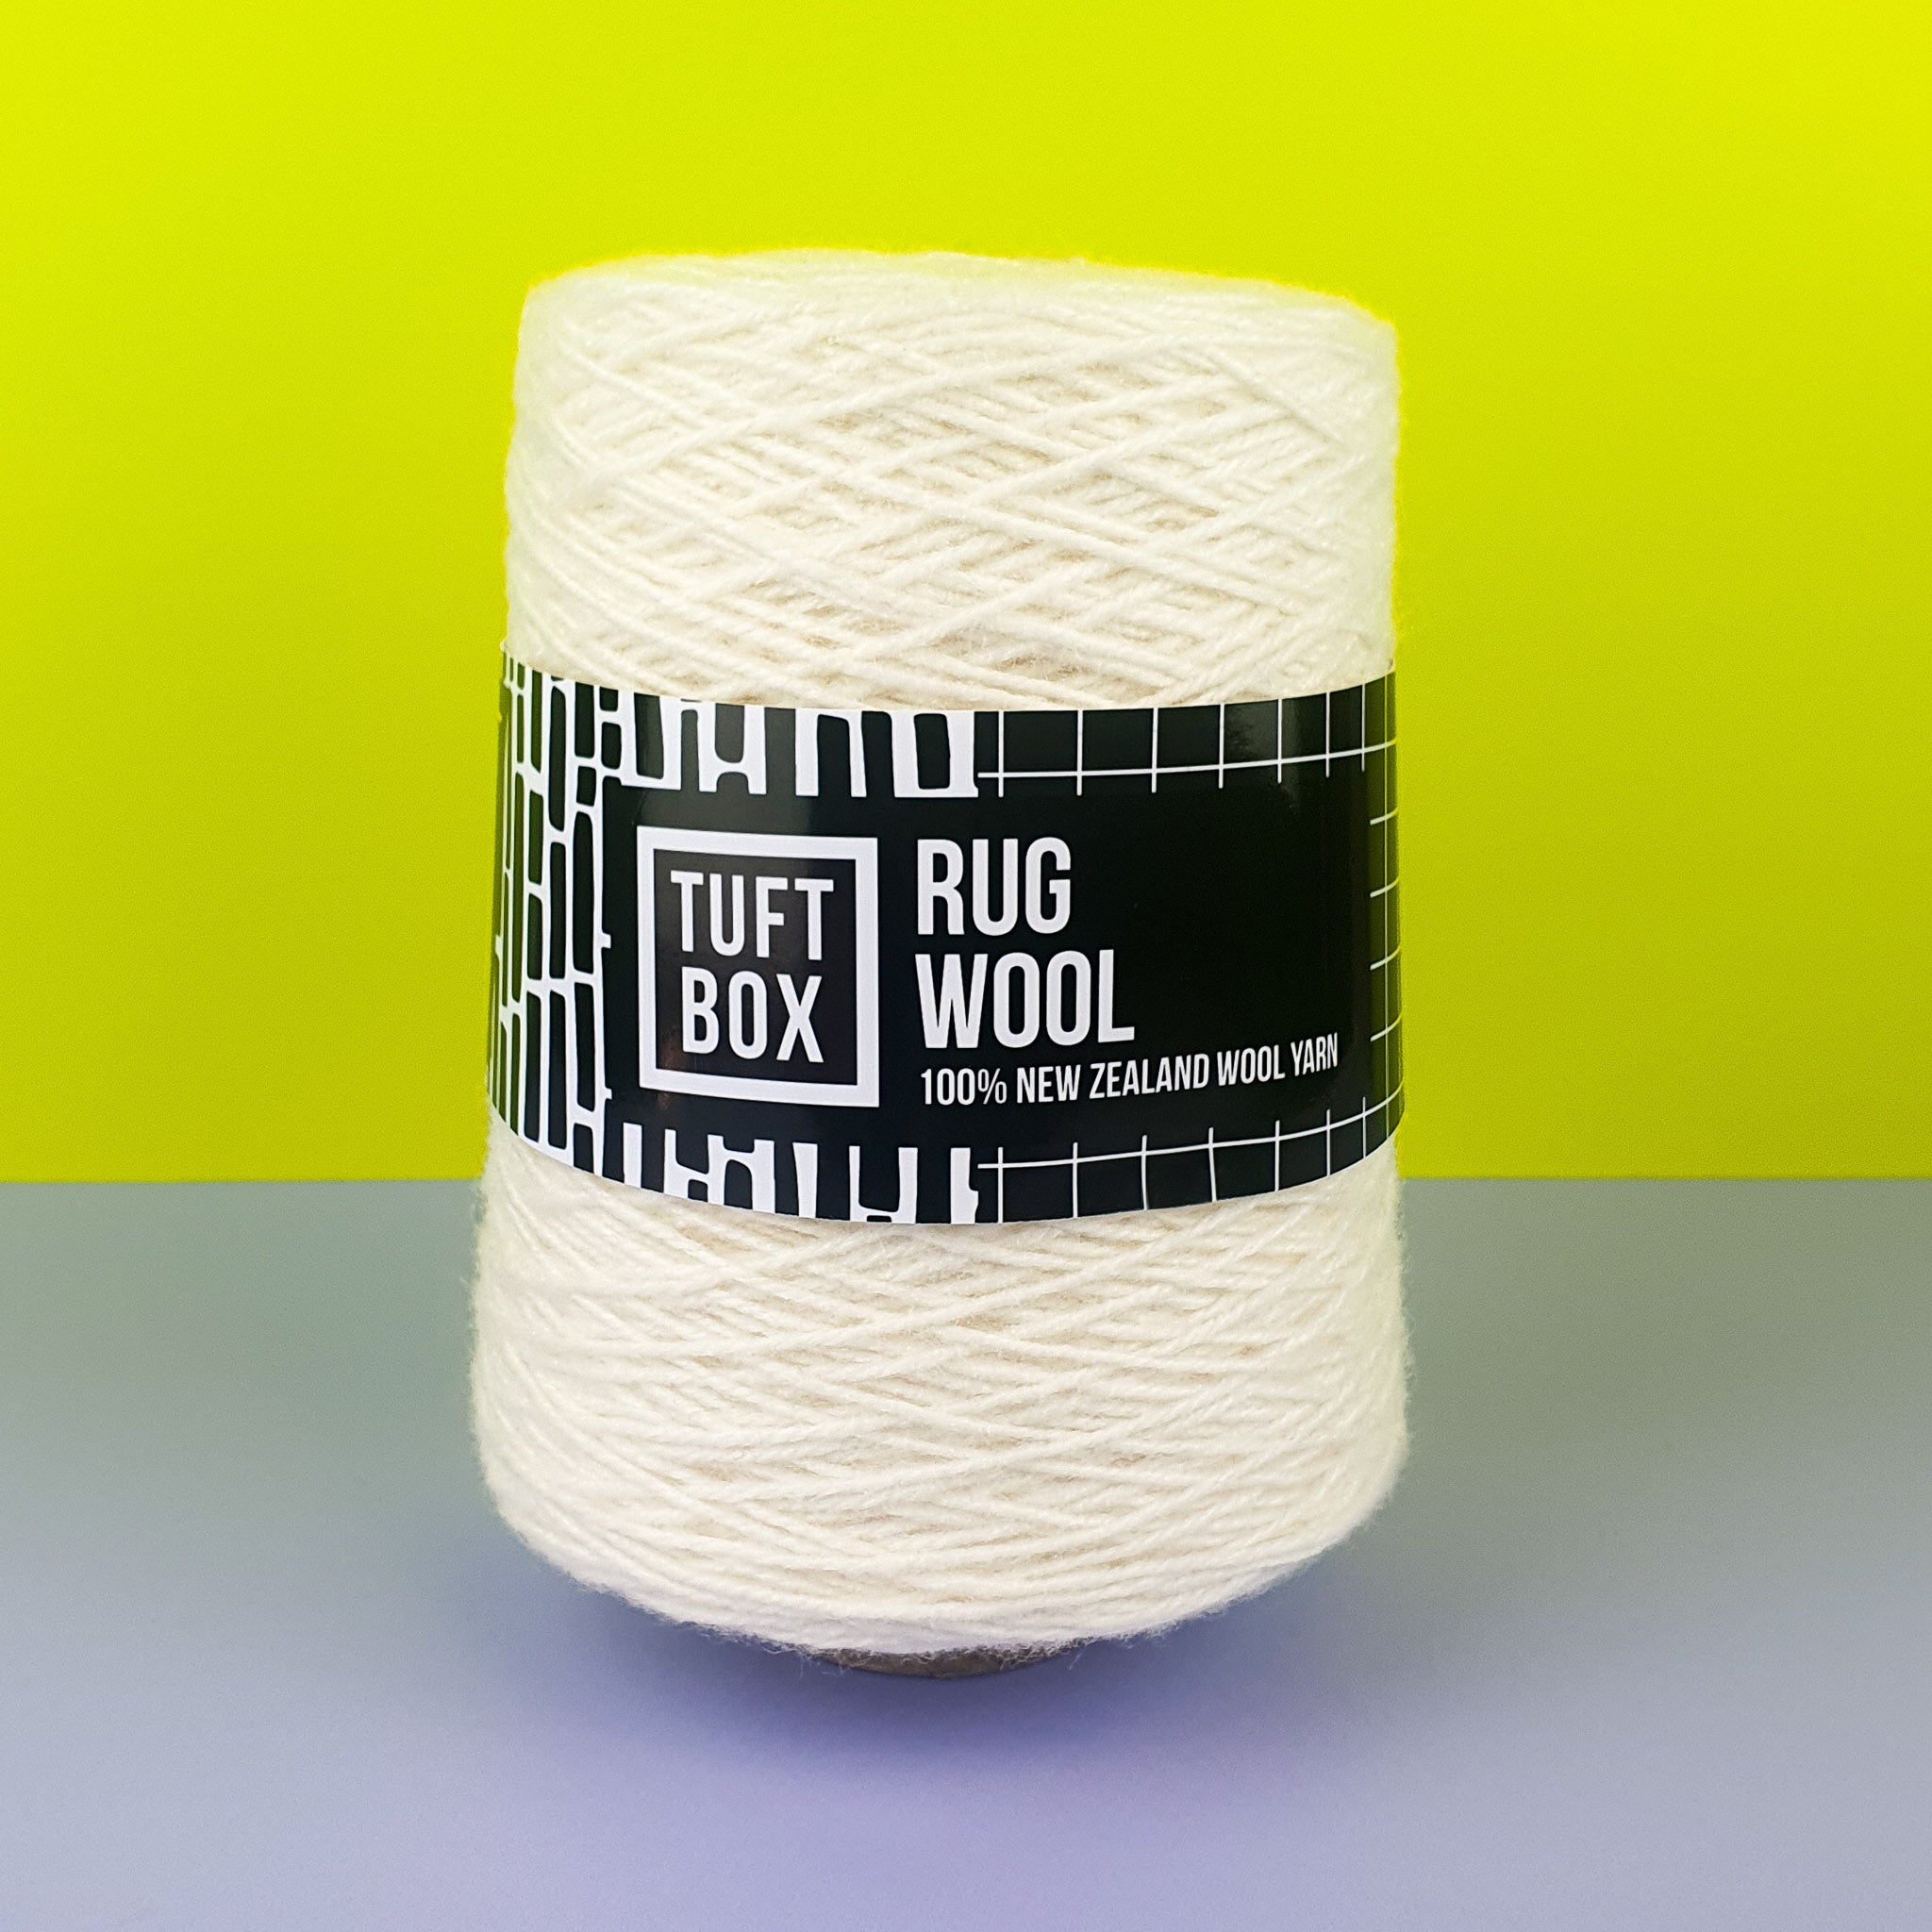 Tuftbox Rug Wool Cone Rice